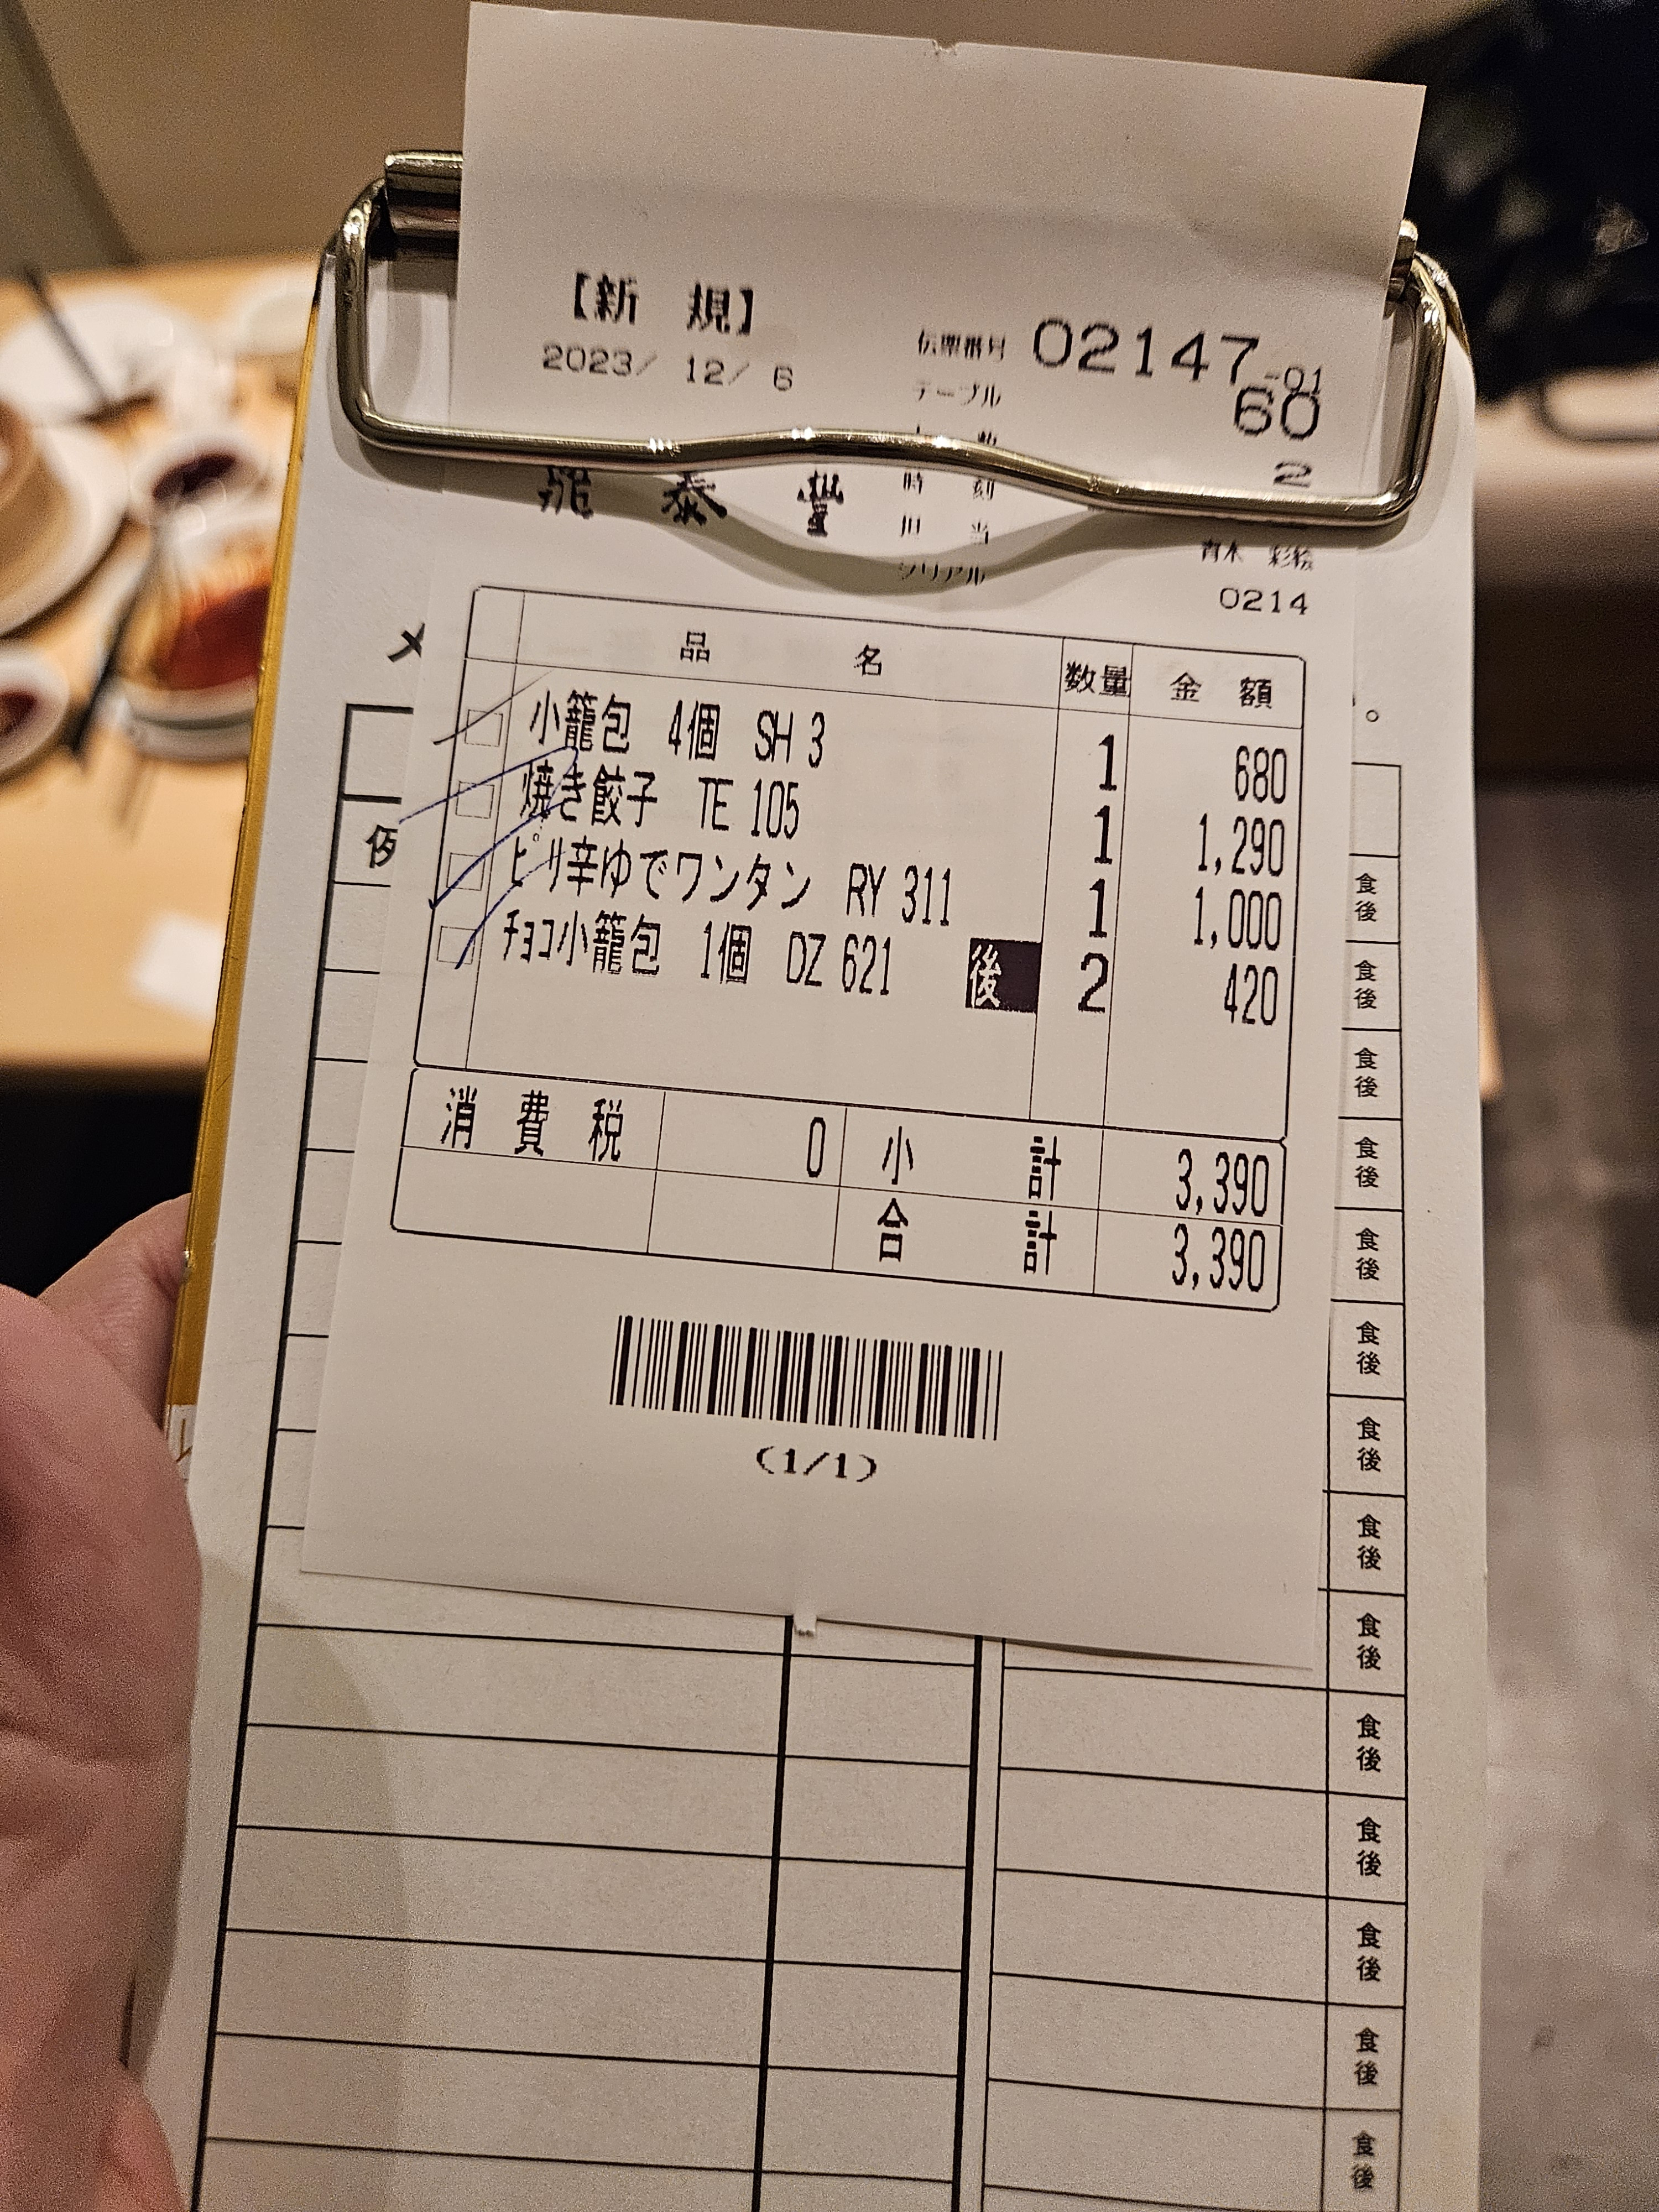 [問卦] 在日本吃鼎泰豐很盤嗎